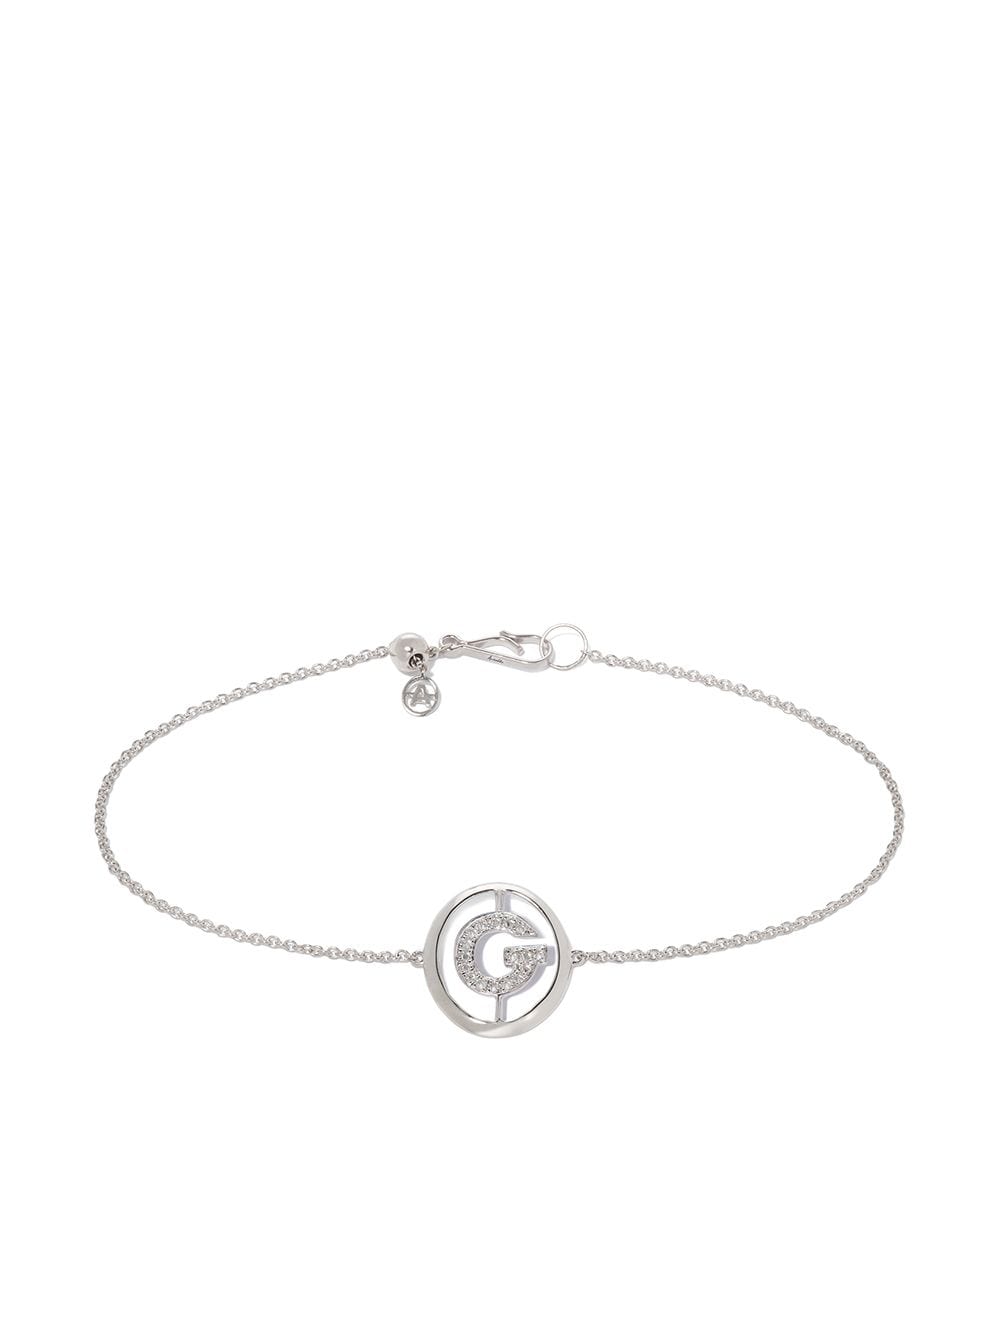 Annoushka 18kt white gold diamond Initial G bracelet - Silver